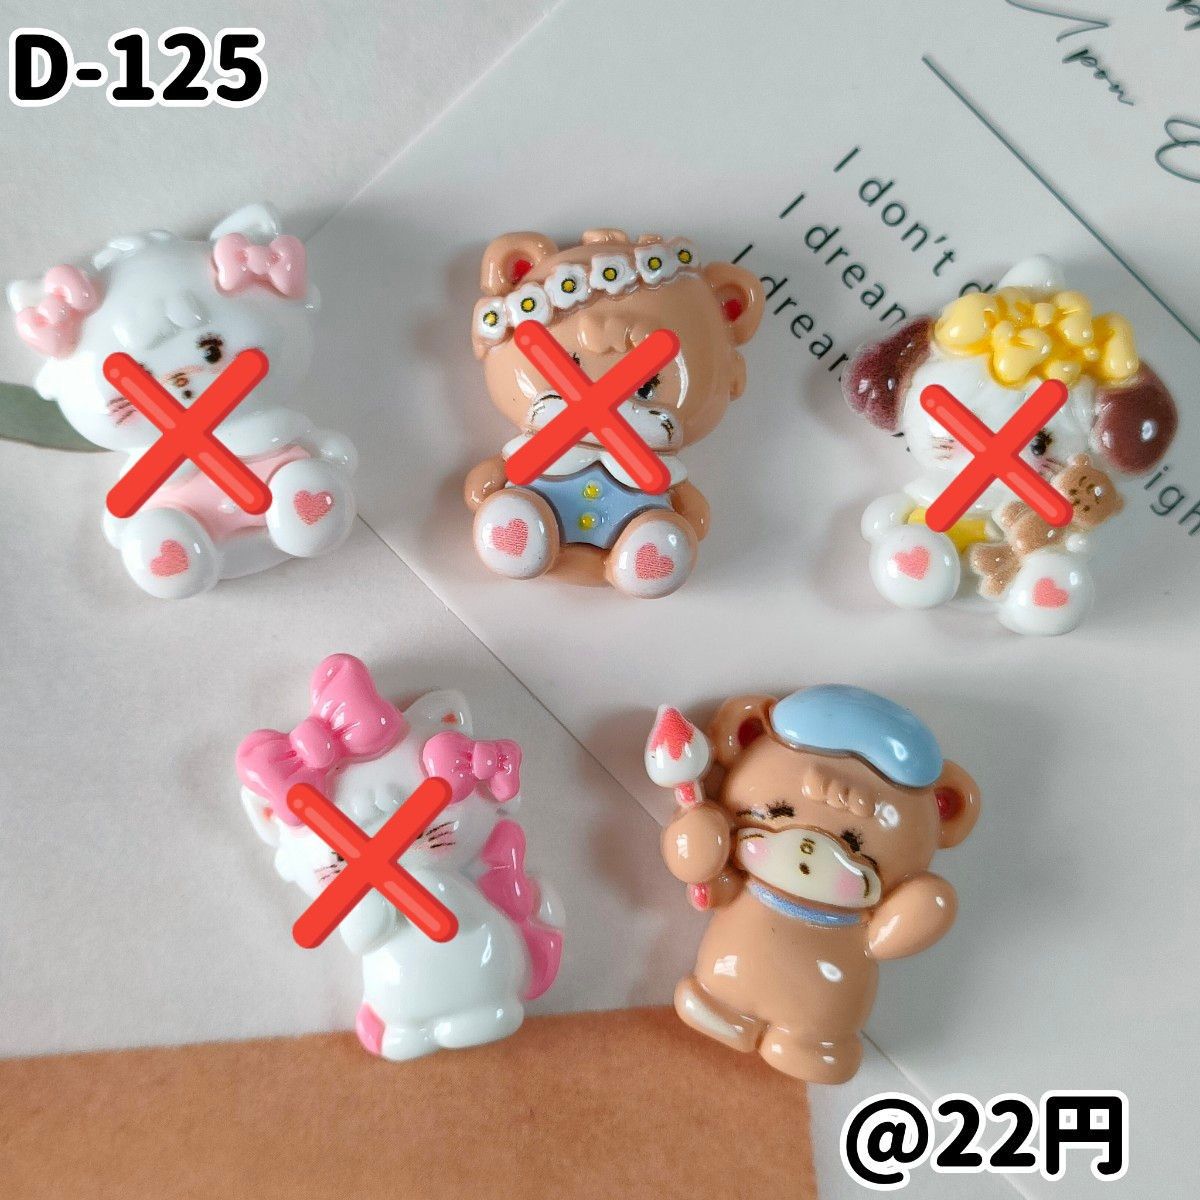 【D-125】cuteアニマルデコパーツ   デコ ハンドメイド貼り付けパーツ